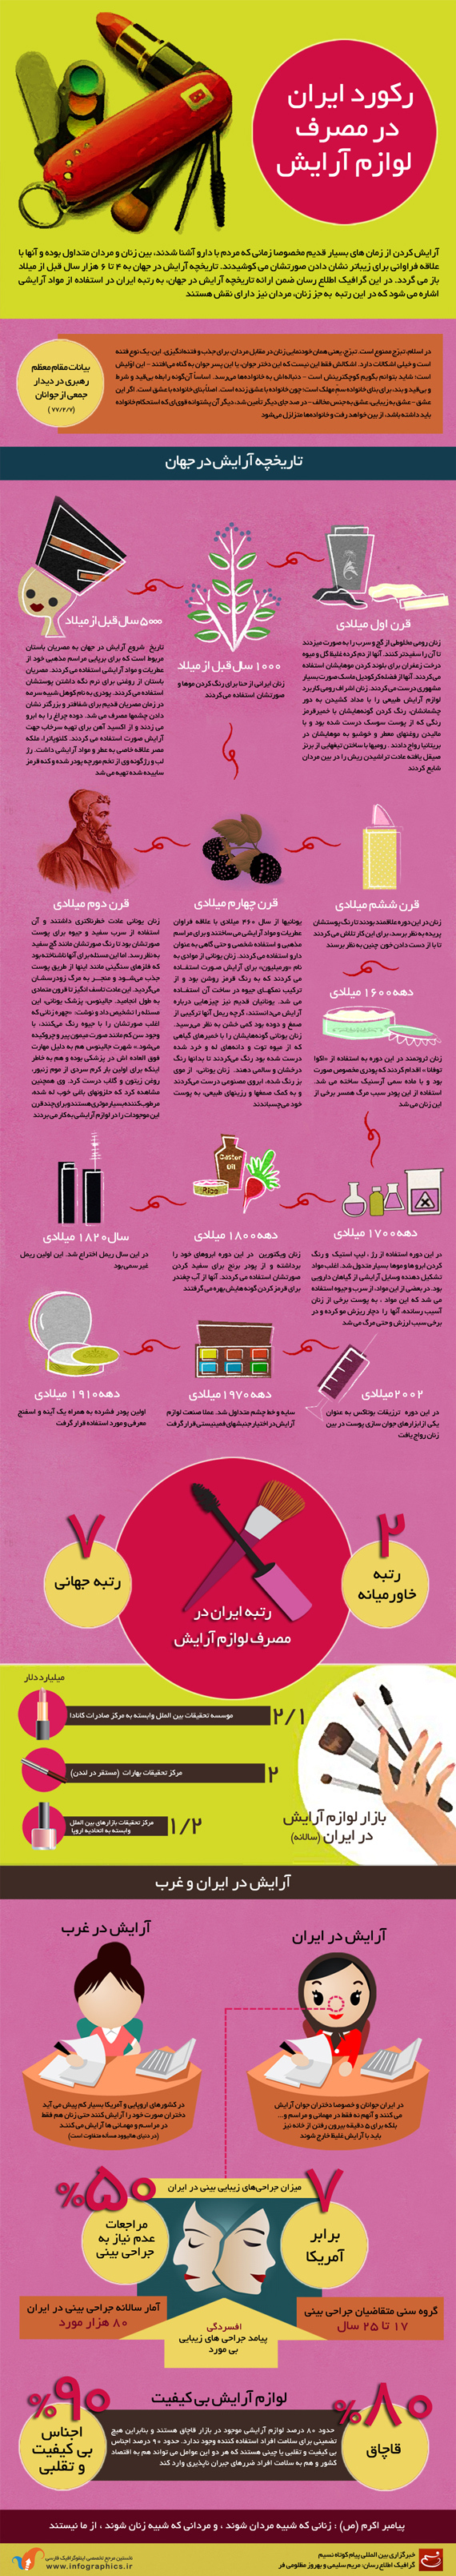 اینفوگرافیک/ رکورد ایران در مصرف لوازم آرایش